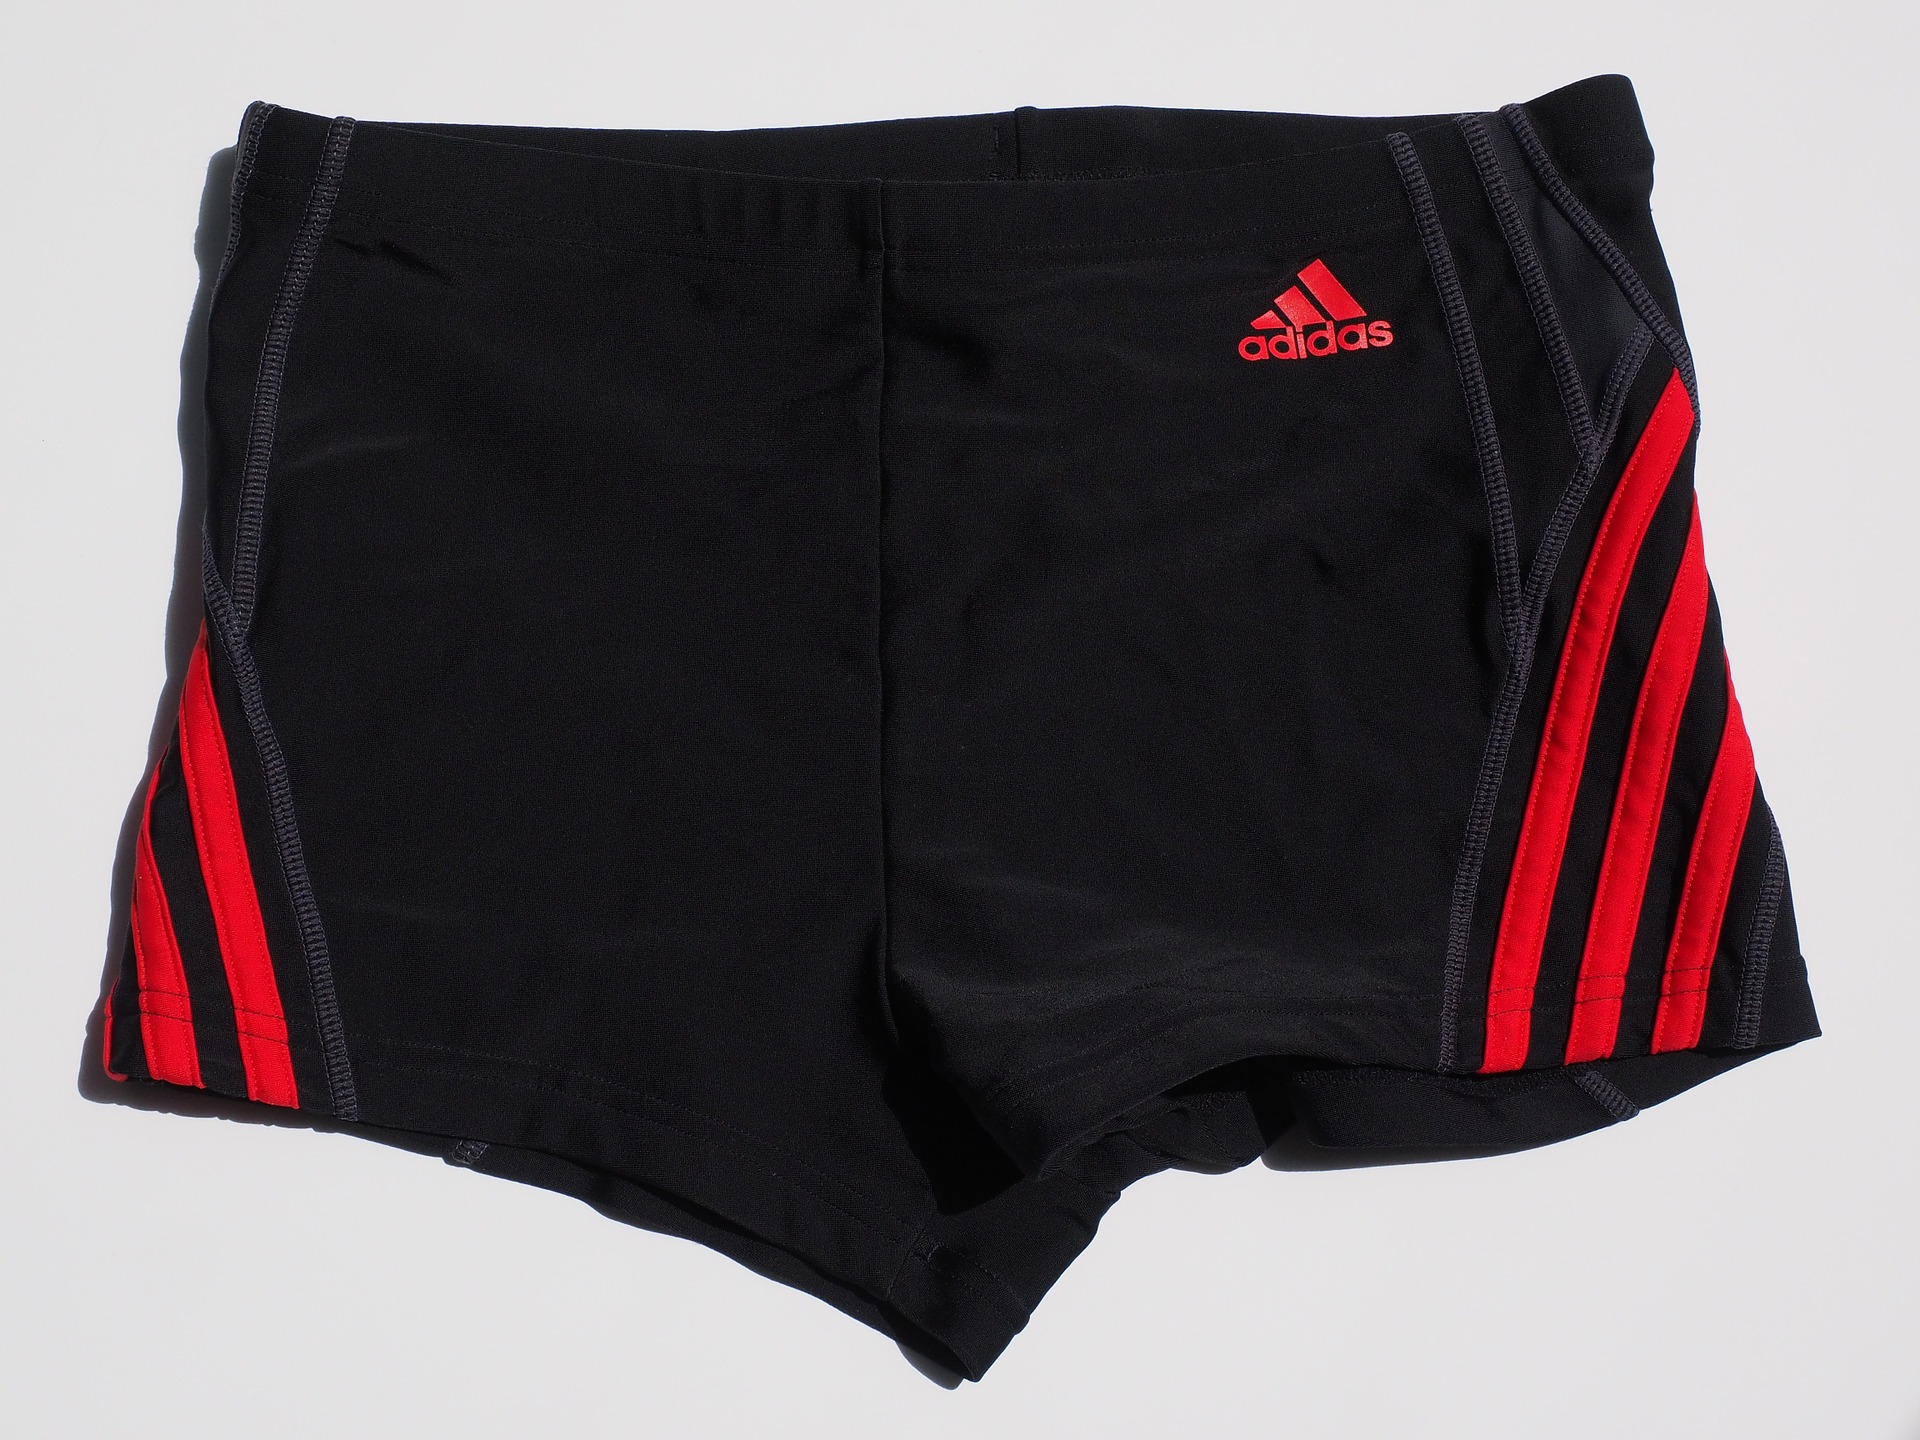 Adidas running shorts